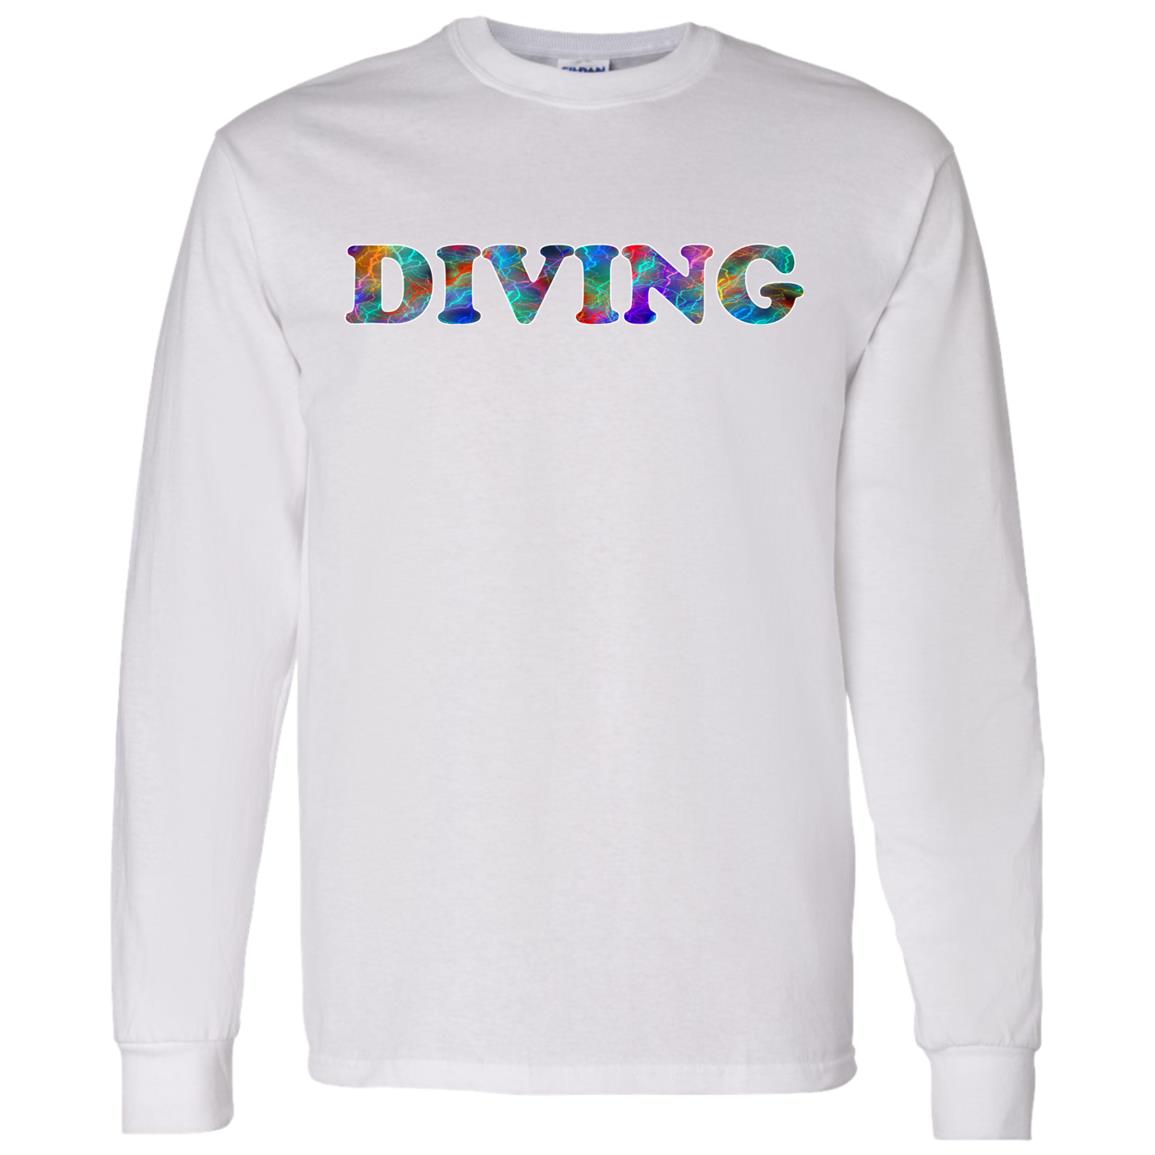 Diving Long Sleeve Sport T-Shirt